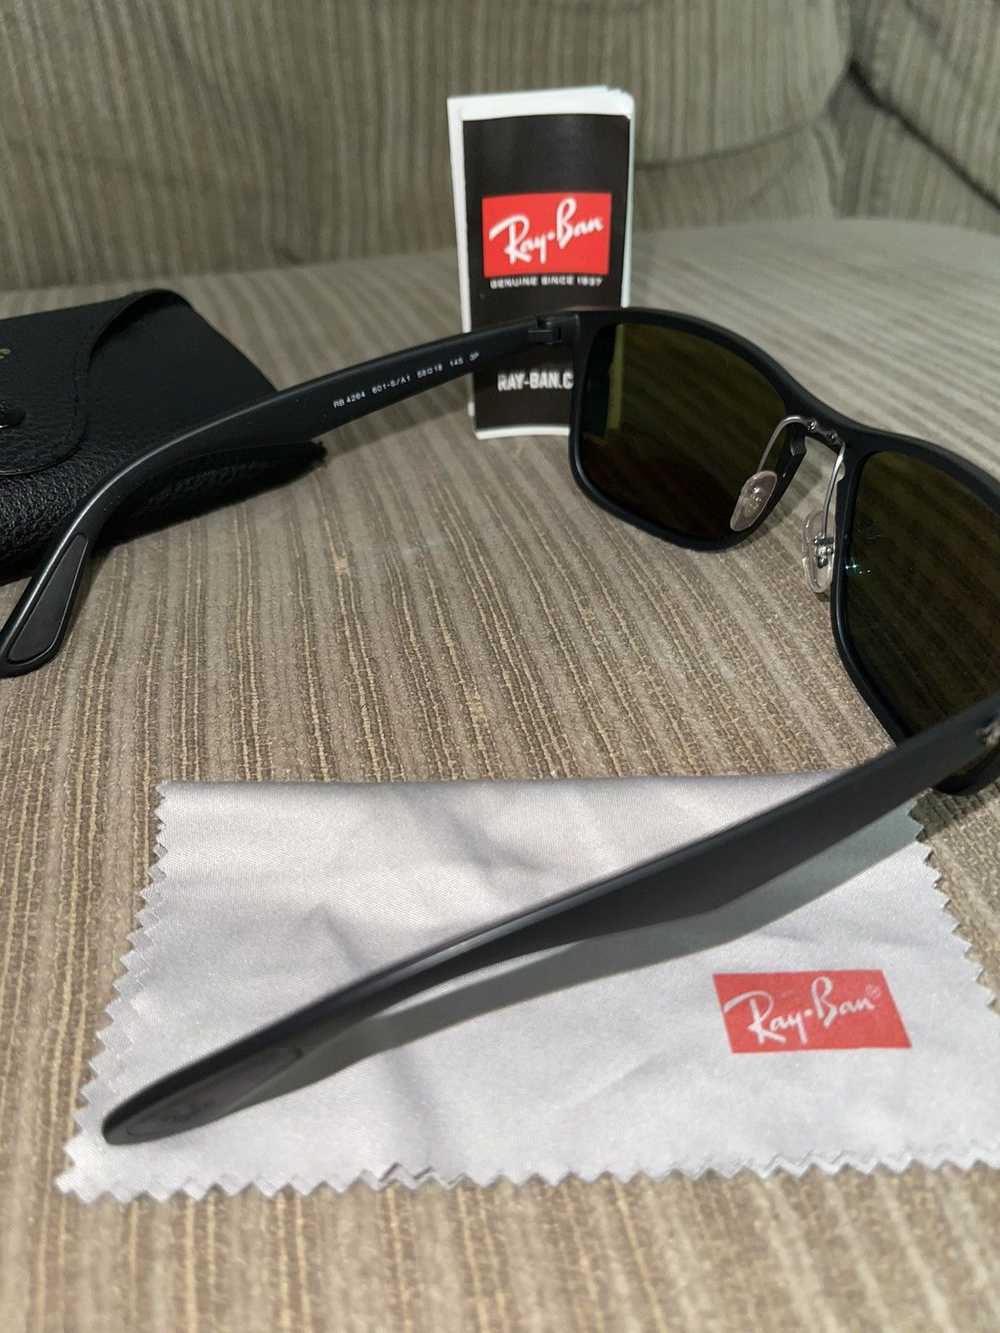 RayBan Ray-Ban P Sunglasses - image 4